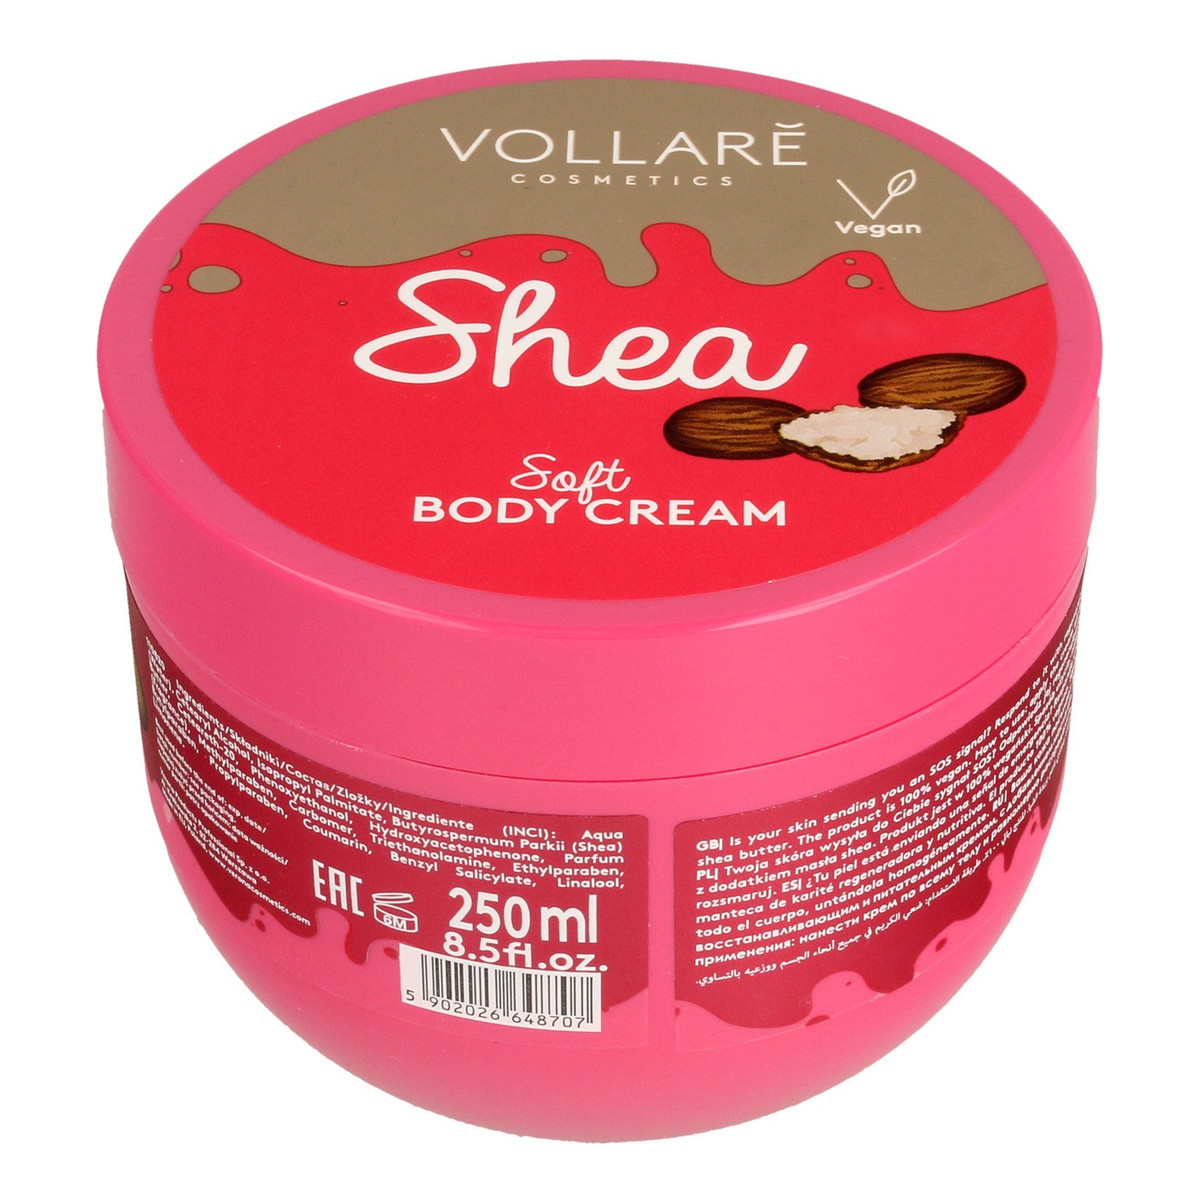 Vollare Soft Body Cream Krem regenerujący do ciała S.O.S. Masło Shea 250ml